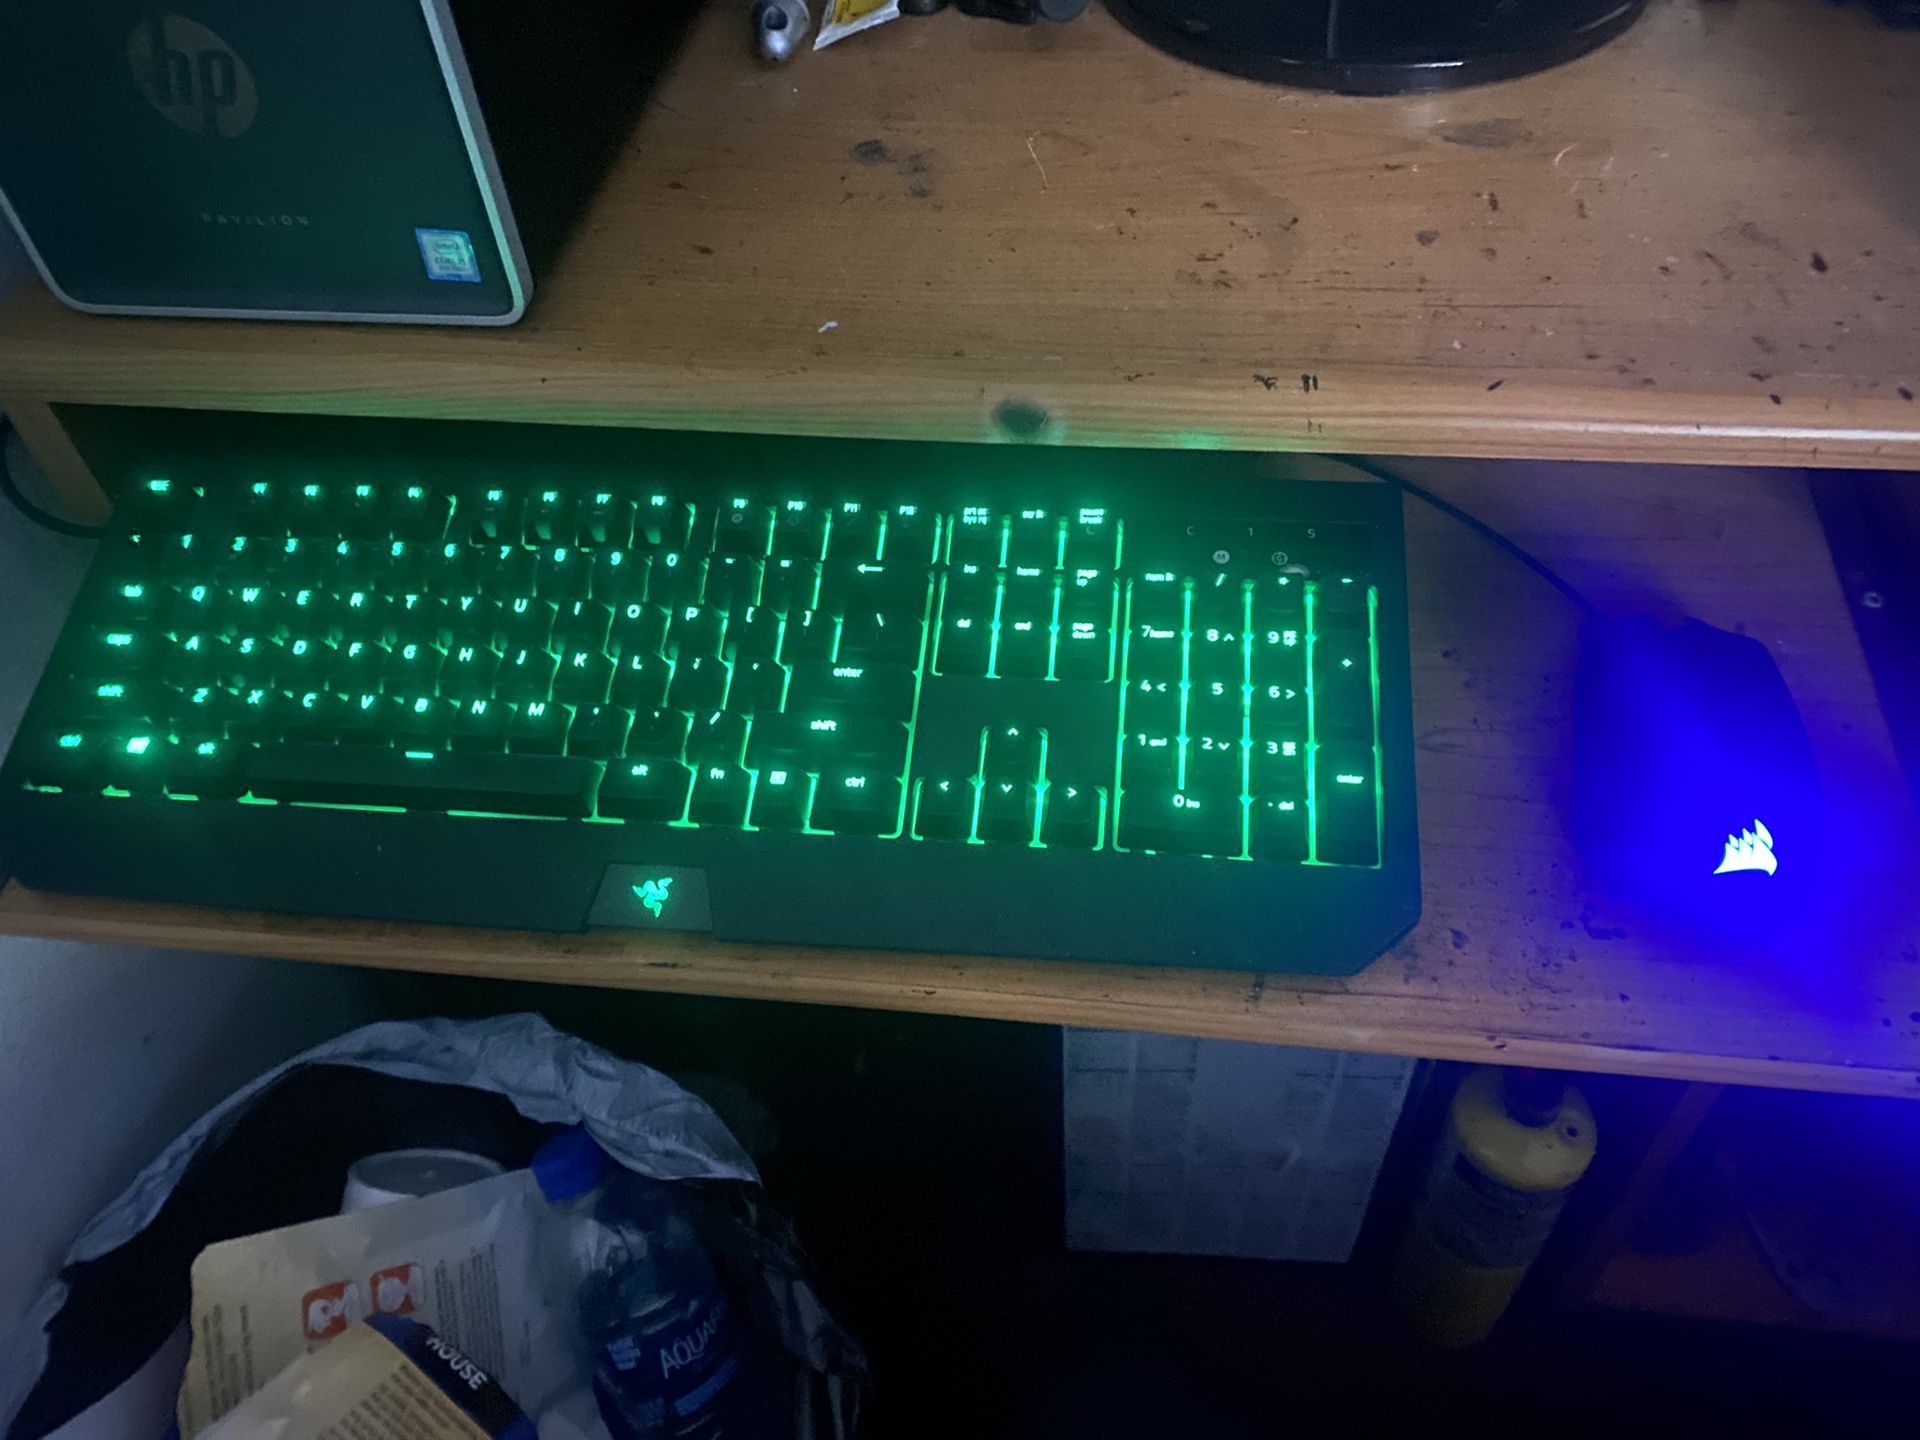 Razer blackwidow ultimate keyboard